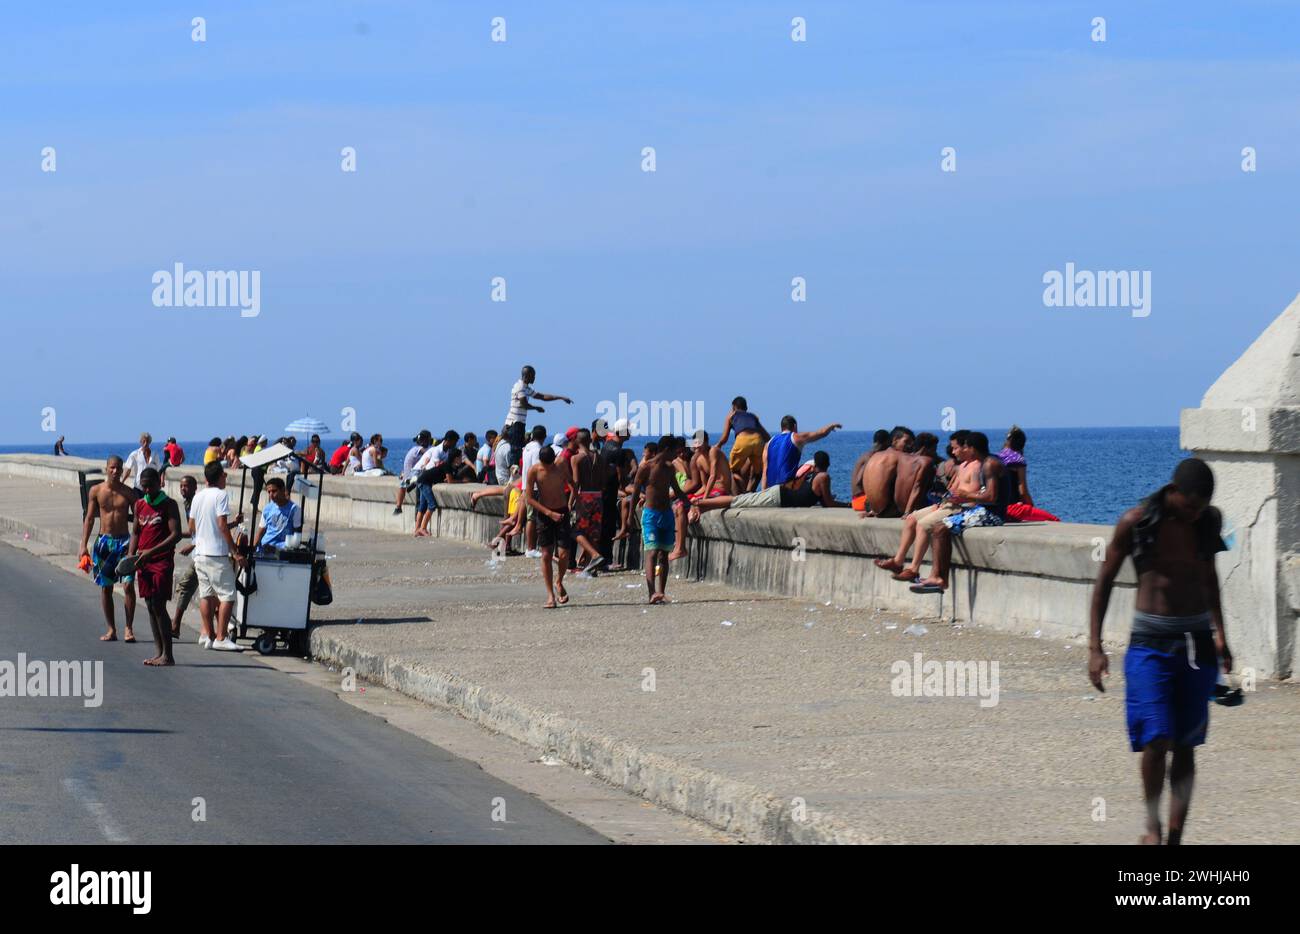 Kubaner geniessen gerne ihre Freizeit am Malecon in Havanna. Cuban people enjoying leisure time at the Malecon in Havanna City. Stock Photo